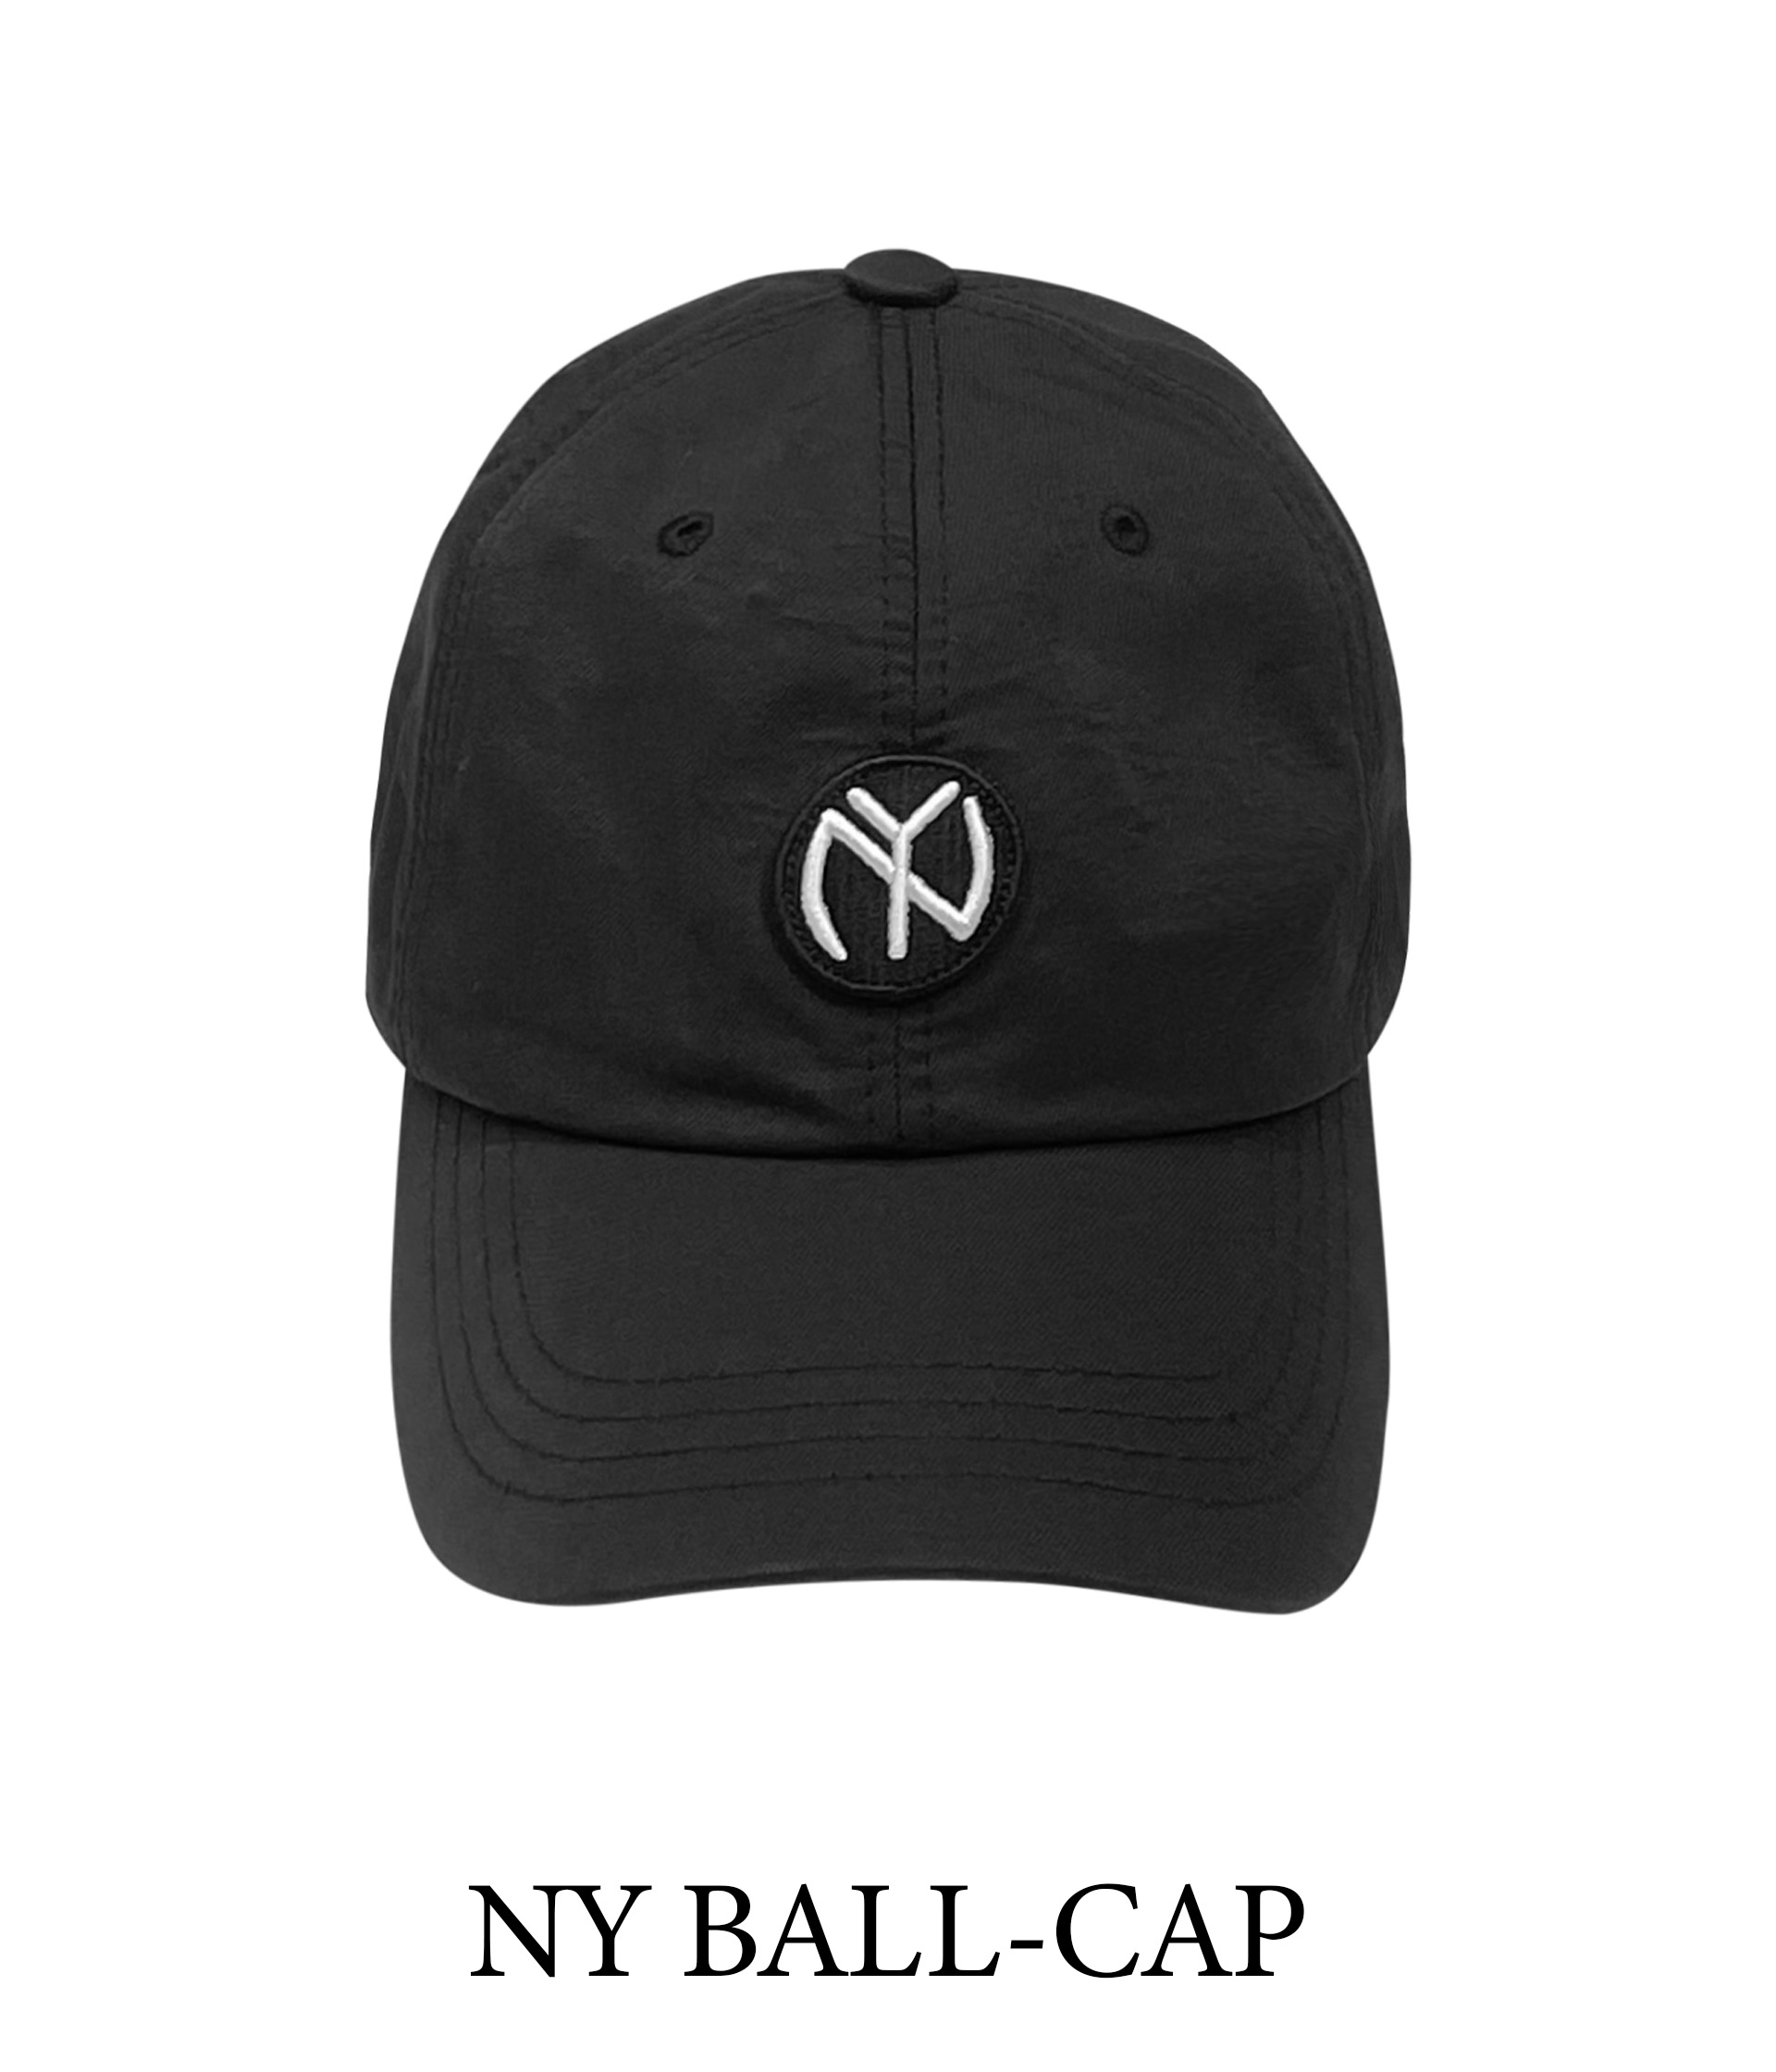 NY BALL-CAP